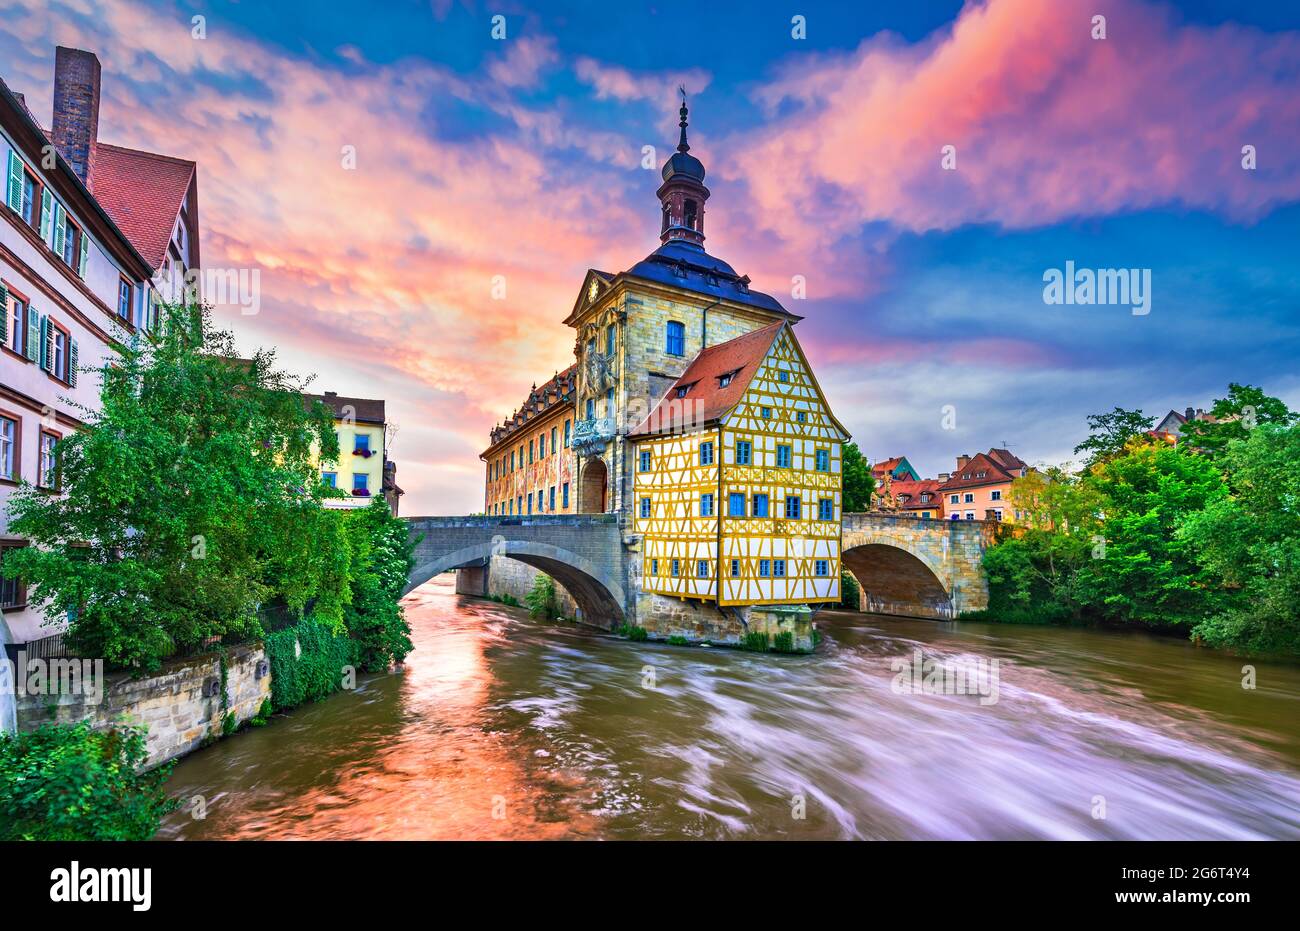 Bamberg, Deutschland. Toller Sonnenuntergang mit Rathaus und Regnitz. Franken, Bayern - Städtereise Sehenswürdigkeit. Stockfoto